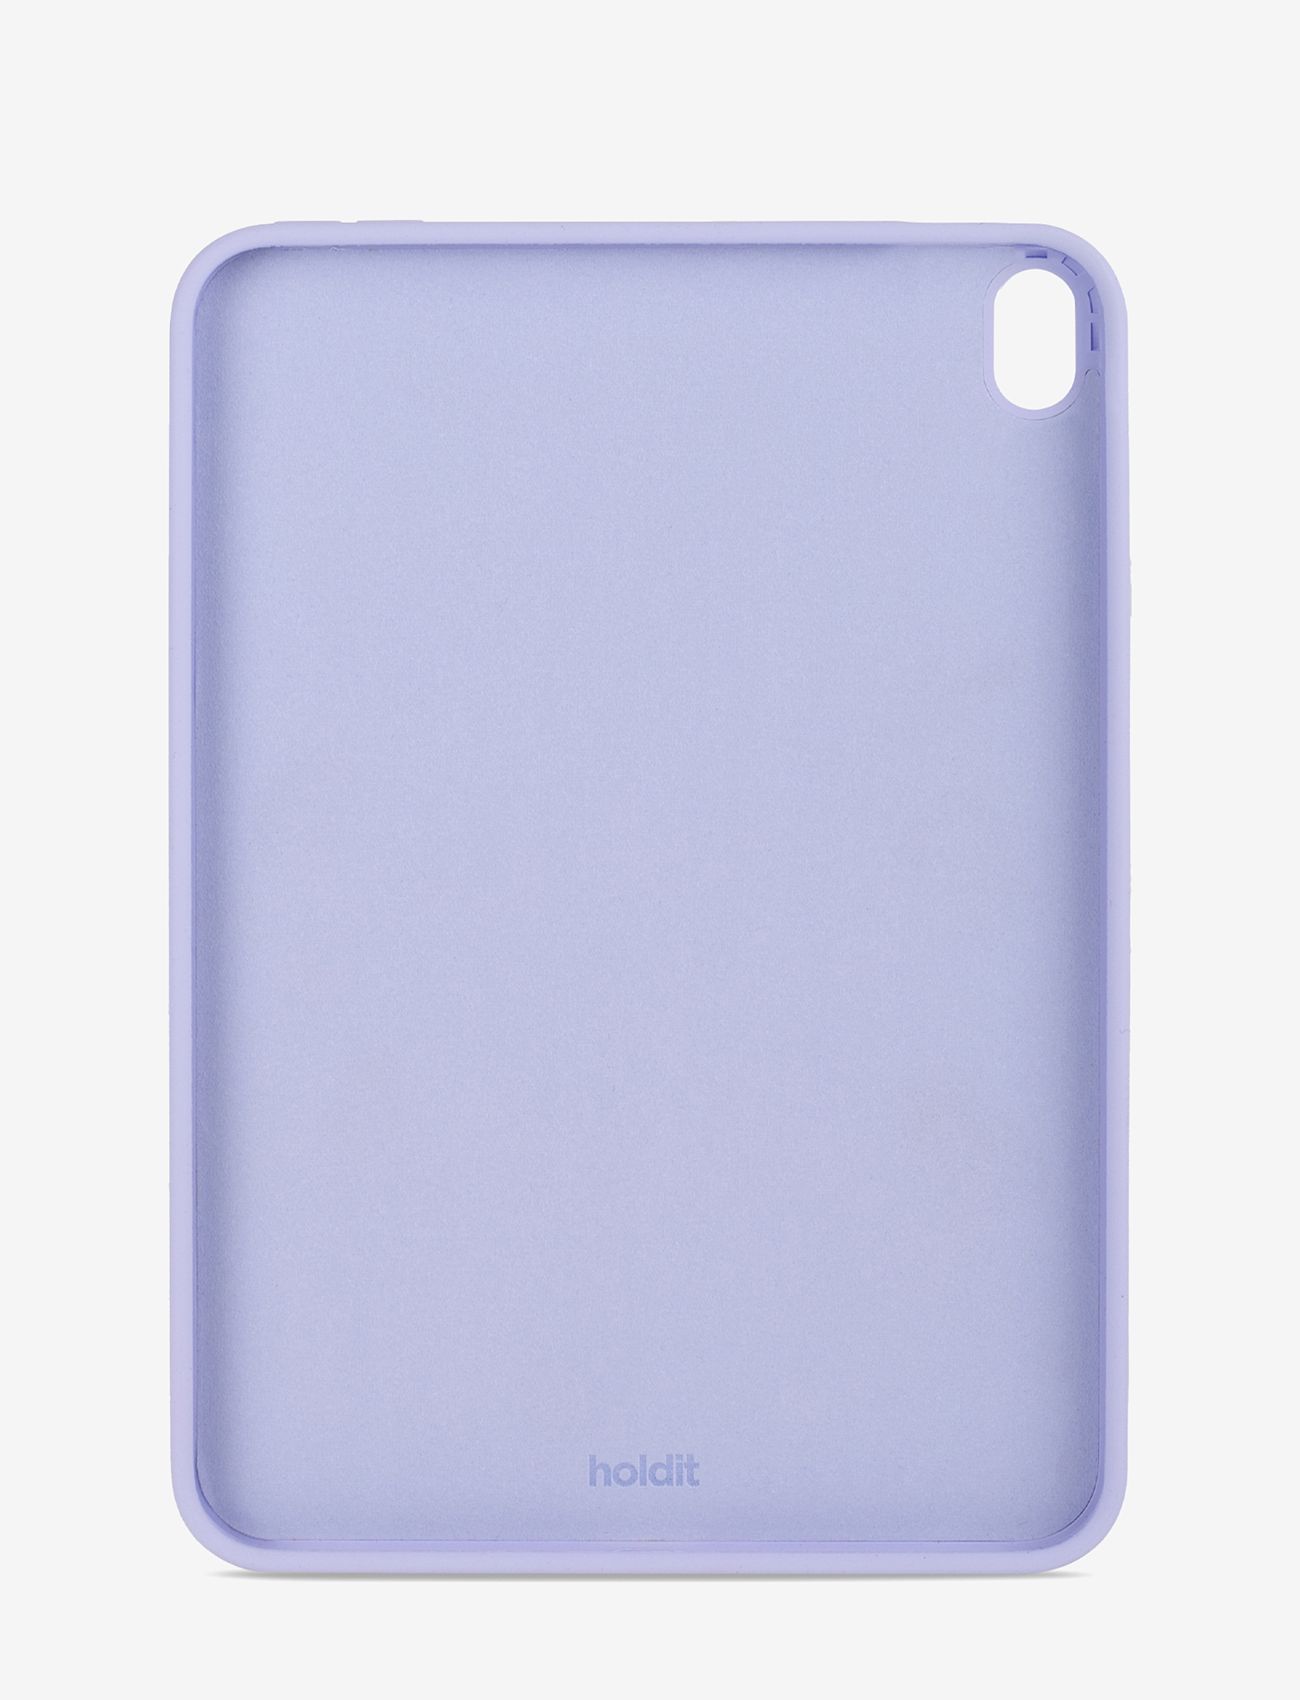 Holdit - Silicone Case iPad Air 10.9 - madalaimad hinnad - lavender - 1